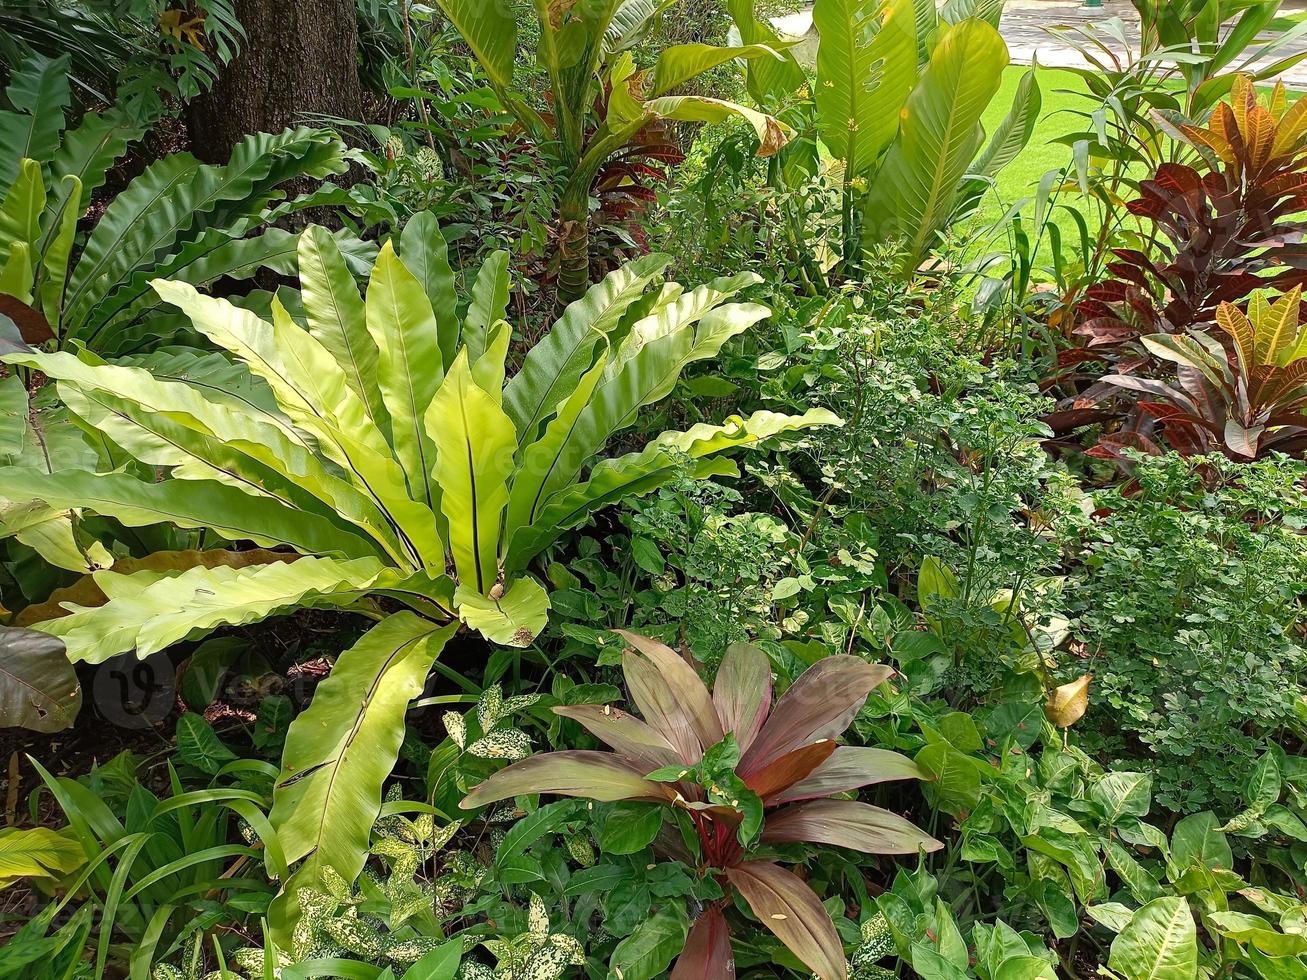 pflanzen botanische tropische blatt wachstum natur umwelt ökologie gartenarbeit hintergrund landschaft frühling bilder foto